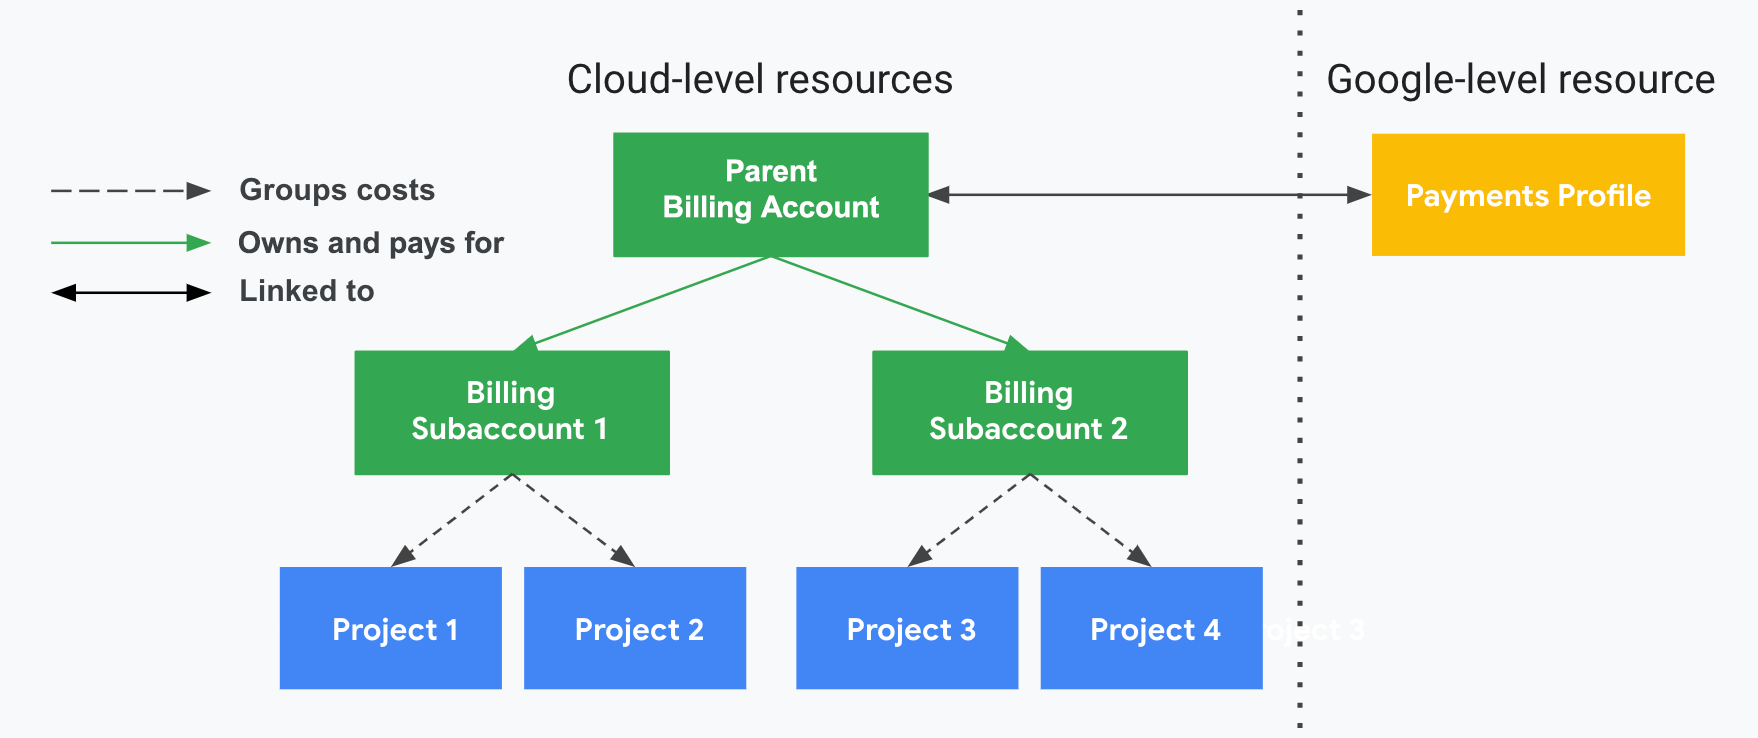 Ilustração que descreve como os projetos se relacionam a contas e subcontas de faturamento do Cloud e a seu perfil para pagamentos. Em um lado estão os recursos no nível do Cloud (conta e subcontas de faturamento do Cloud e projetos associados). No outro lado, dividido por uma linha vertical pontilhada, está seu recurso no nível do Google (um perfil para pagamentos). Os custos de uso do projeto são agrupados e subtotalizados pelas
         subcontas do Cloud Billing associadas. As subcontas são pagas
         pela conta principal do Cloud Billing do revendedor, que está
         vinculada ao seu perfil para pagamentos.